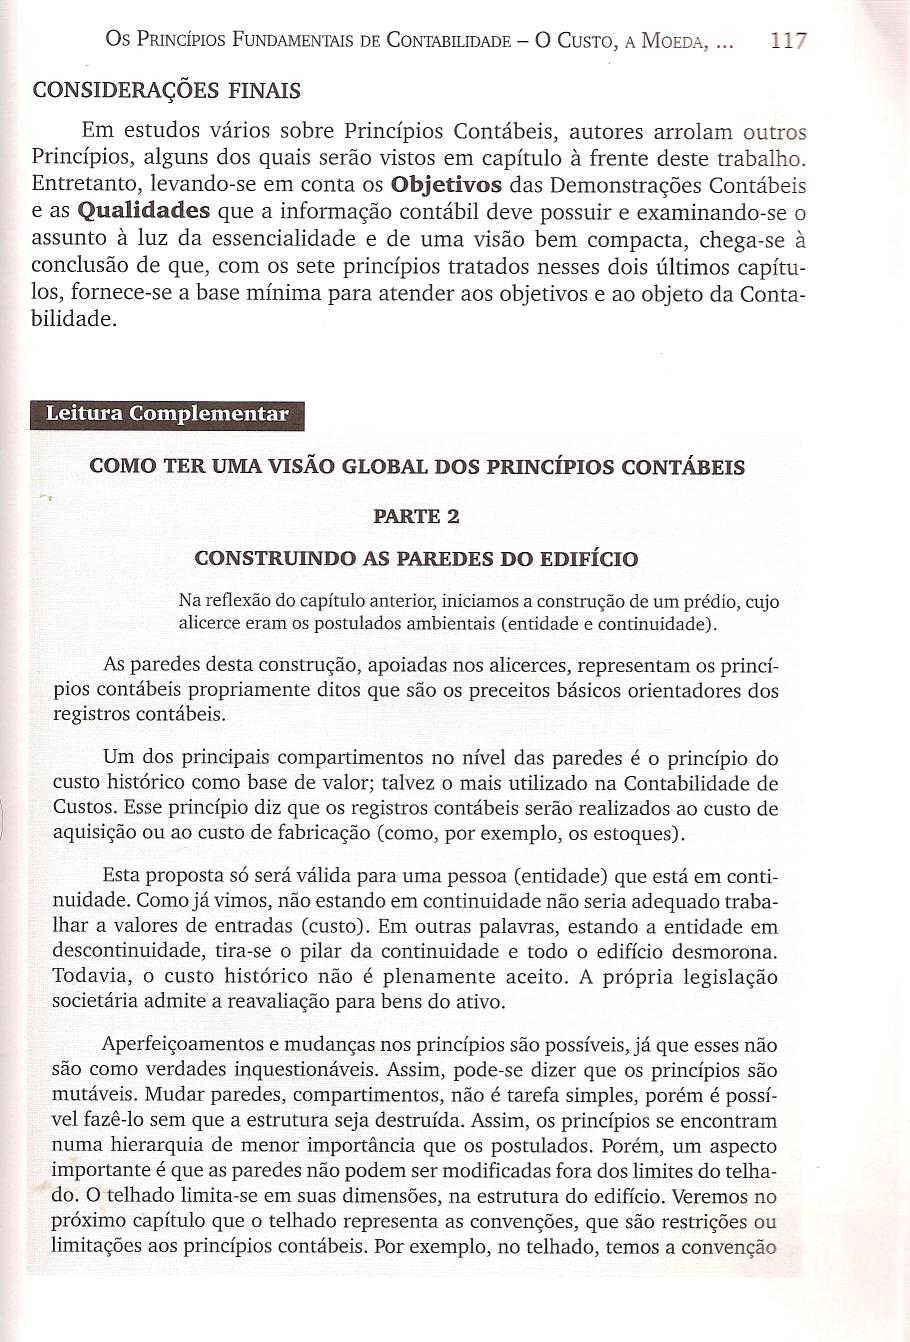 Os PRINCÍPIOS FUNDAMENTAIS DE CONTABILIDADE - O CUSTO, A MOEDA,.